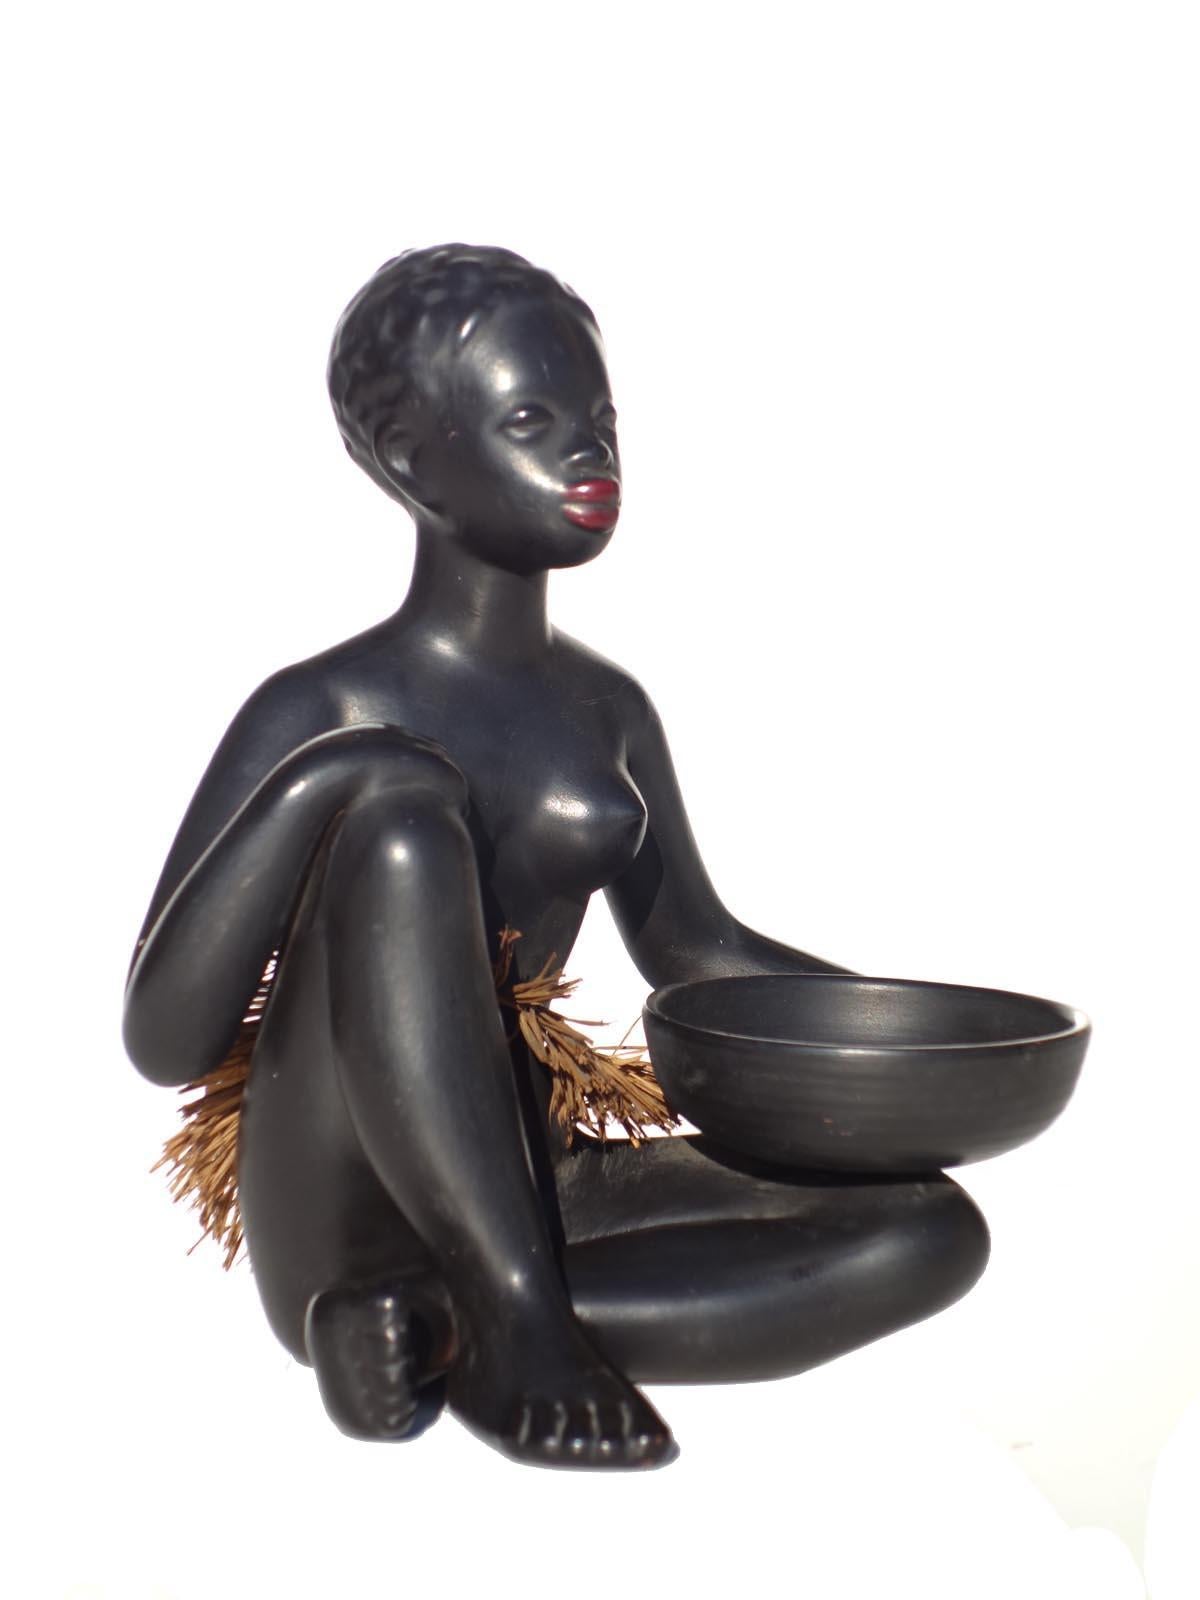 Escultura de mujeres exóticas de cerámica.